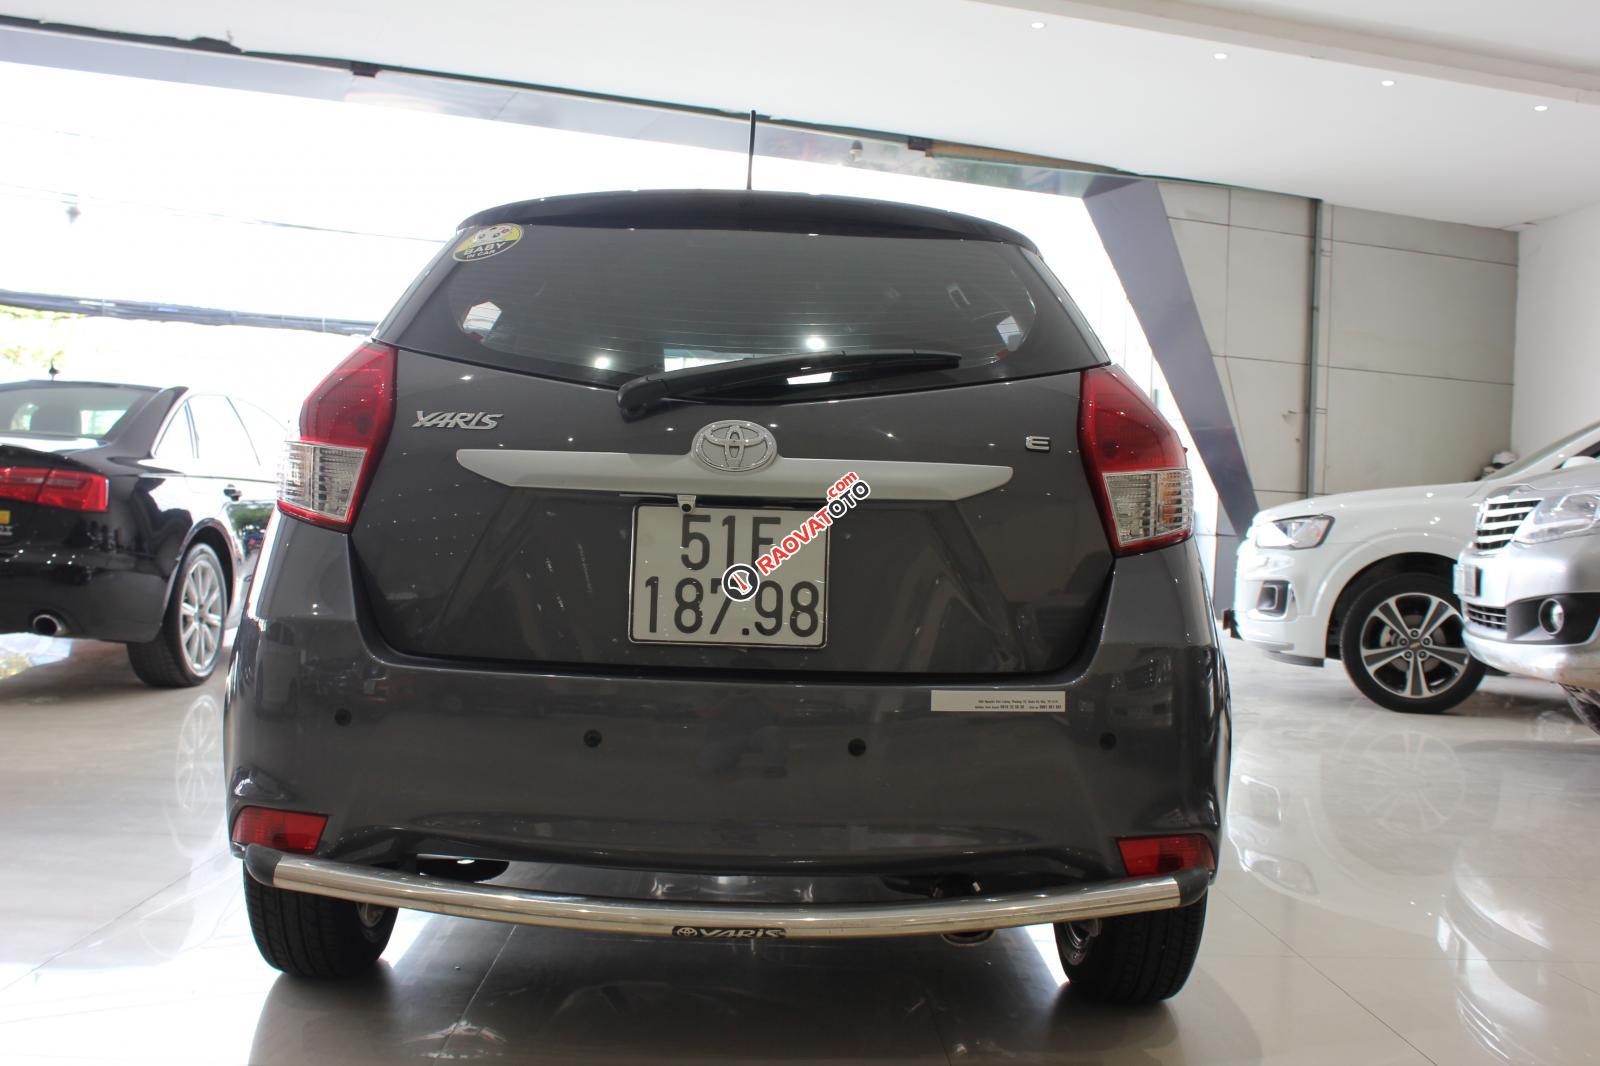 Cần bán Toyota Yaris E số tự động, bảo hành 6 tháng máy hộp số-12